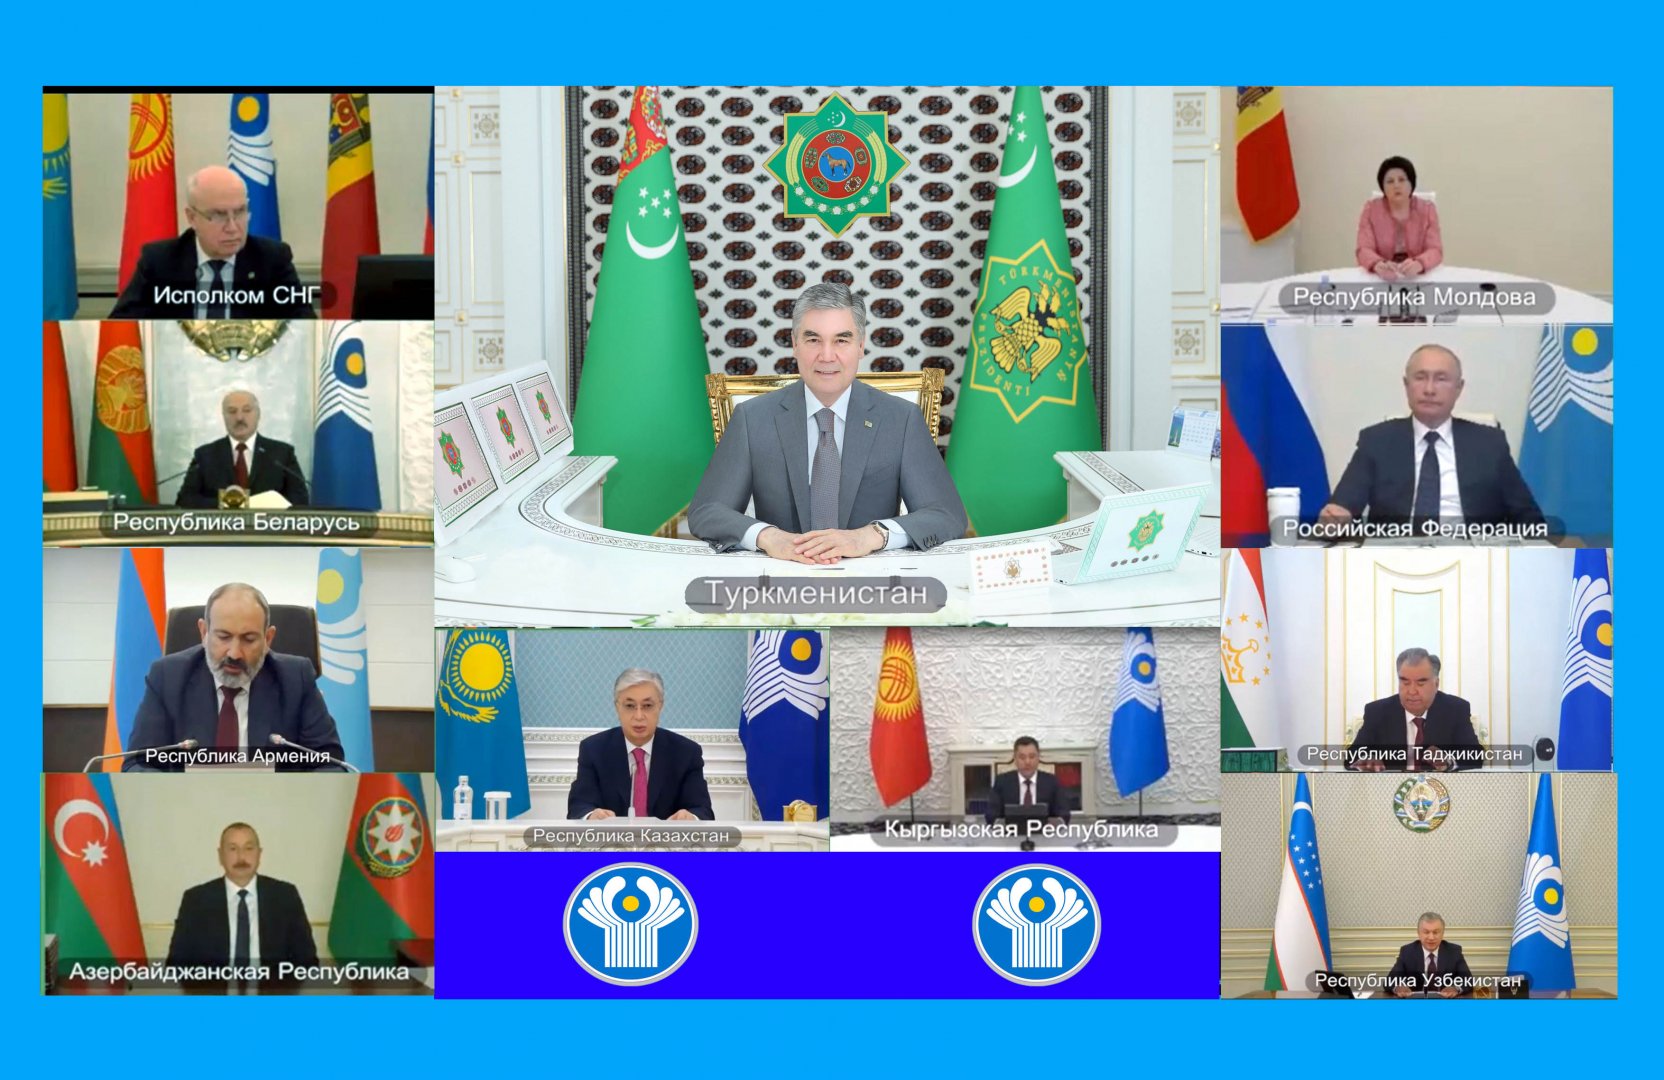 Türkmenistanyň Prezidenti: «Dünýä syýasatyna hukuga bolan hormatyň, gepleşikler medeniýetiniň, ynanyşmagyň hem-de döwletleriň arasyndaky gatnaşyklaryň kesgitliliginiň gaýtaryp getirilmegi derwaýysdyr»